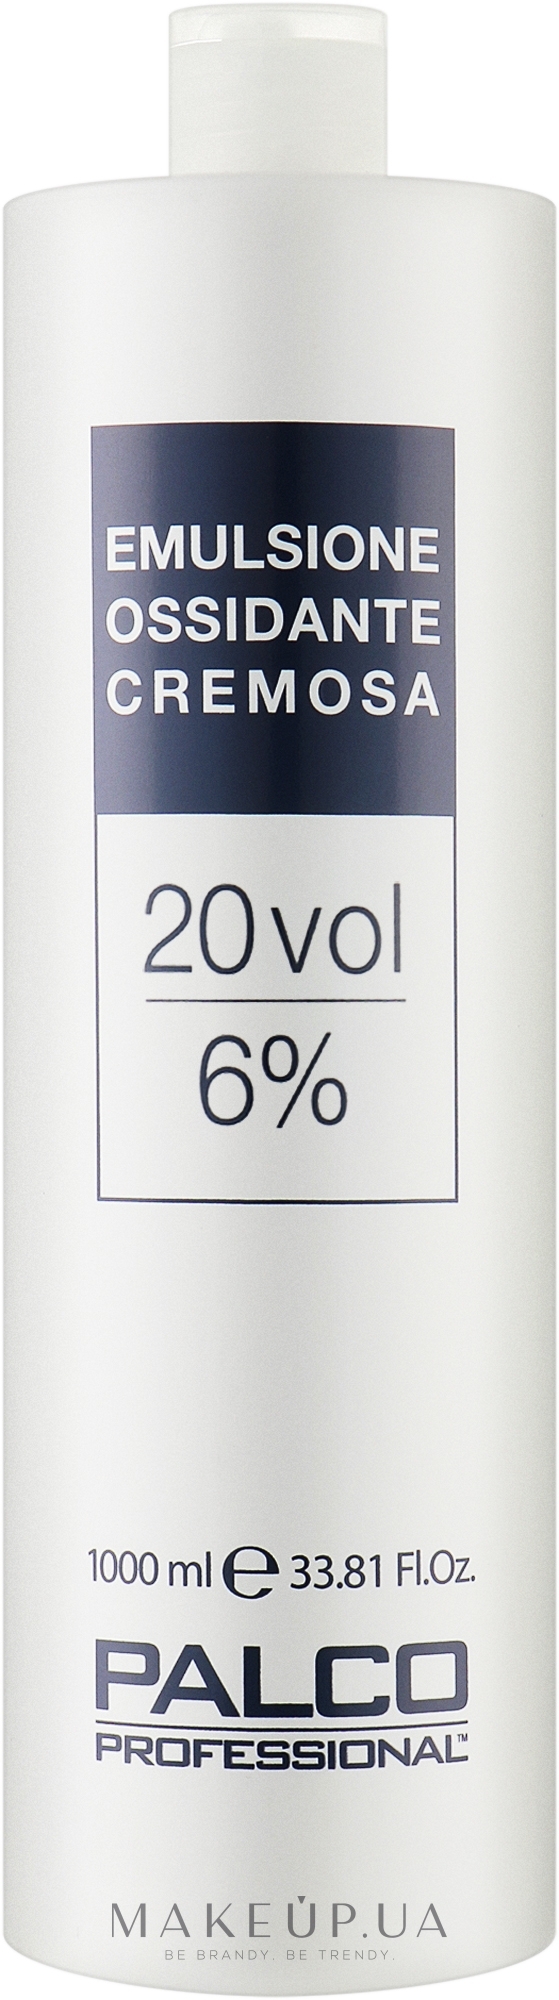 Окислительная кремовая эмульсия 20 объемов 6% - Palco Professional Emulsione Ossidante Cremosa — фото 1000ml